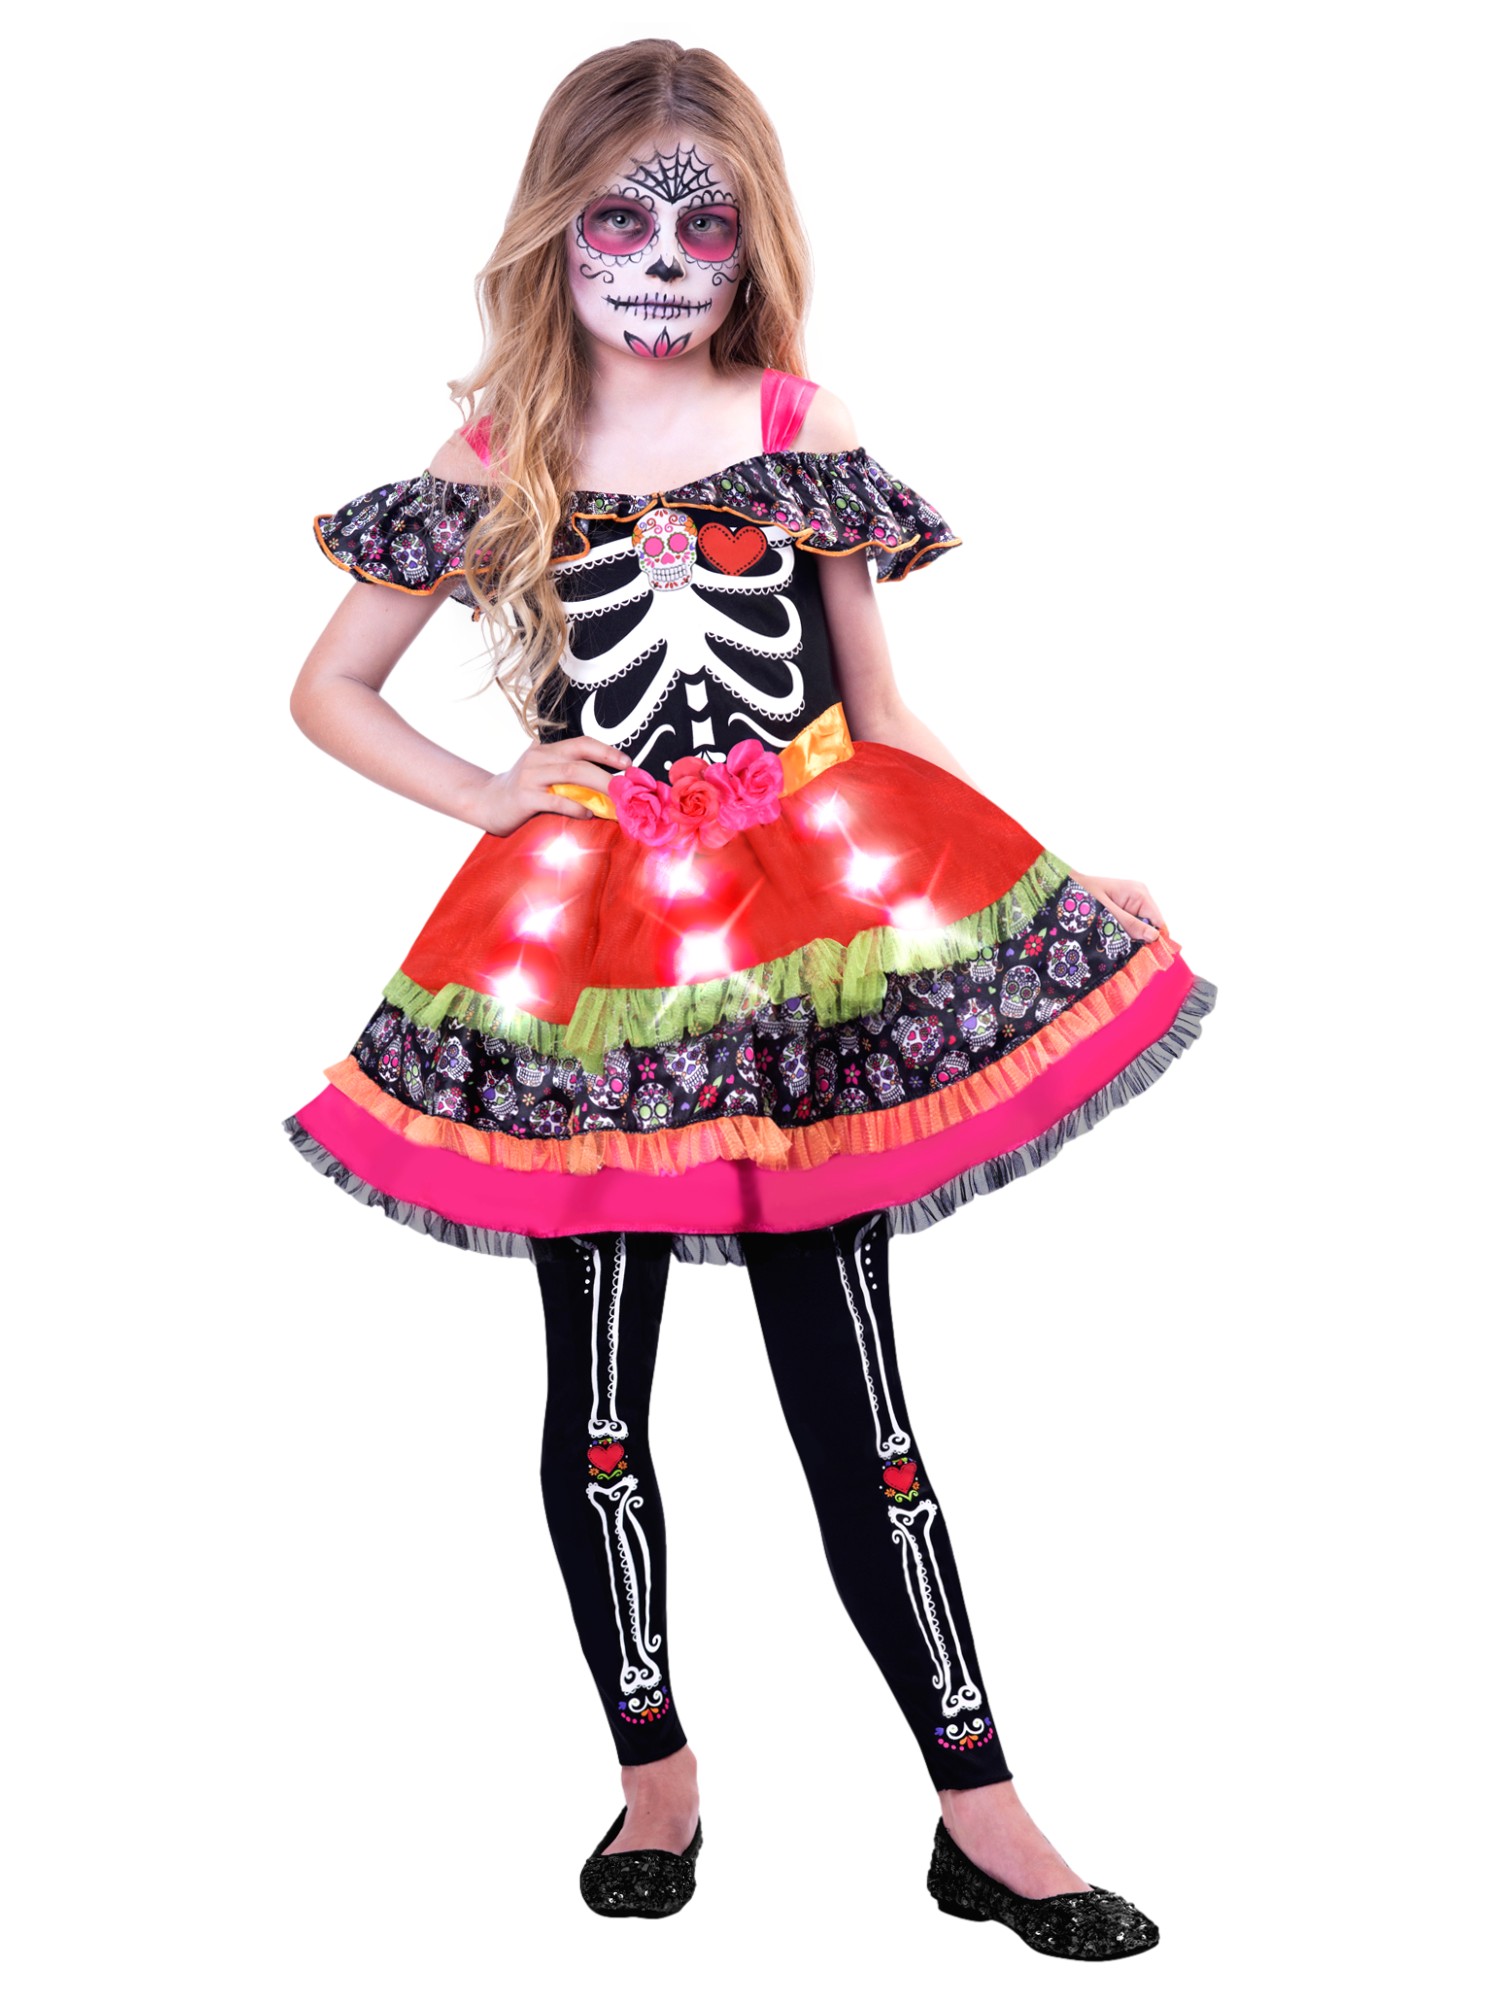 Goodmark Sugar Skull Sweetie Light Up Dress Day of Dead Costume Medium (8-10)